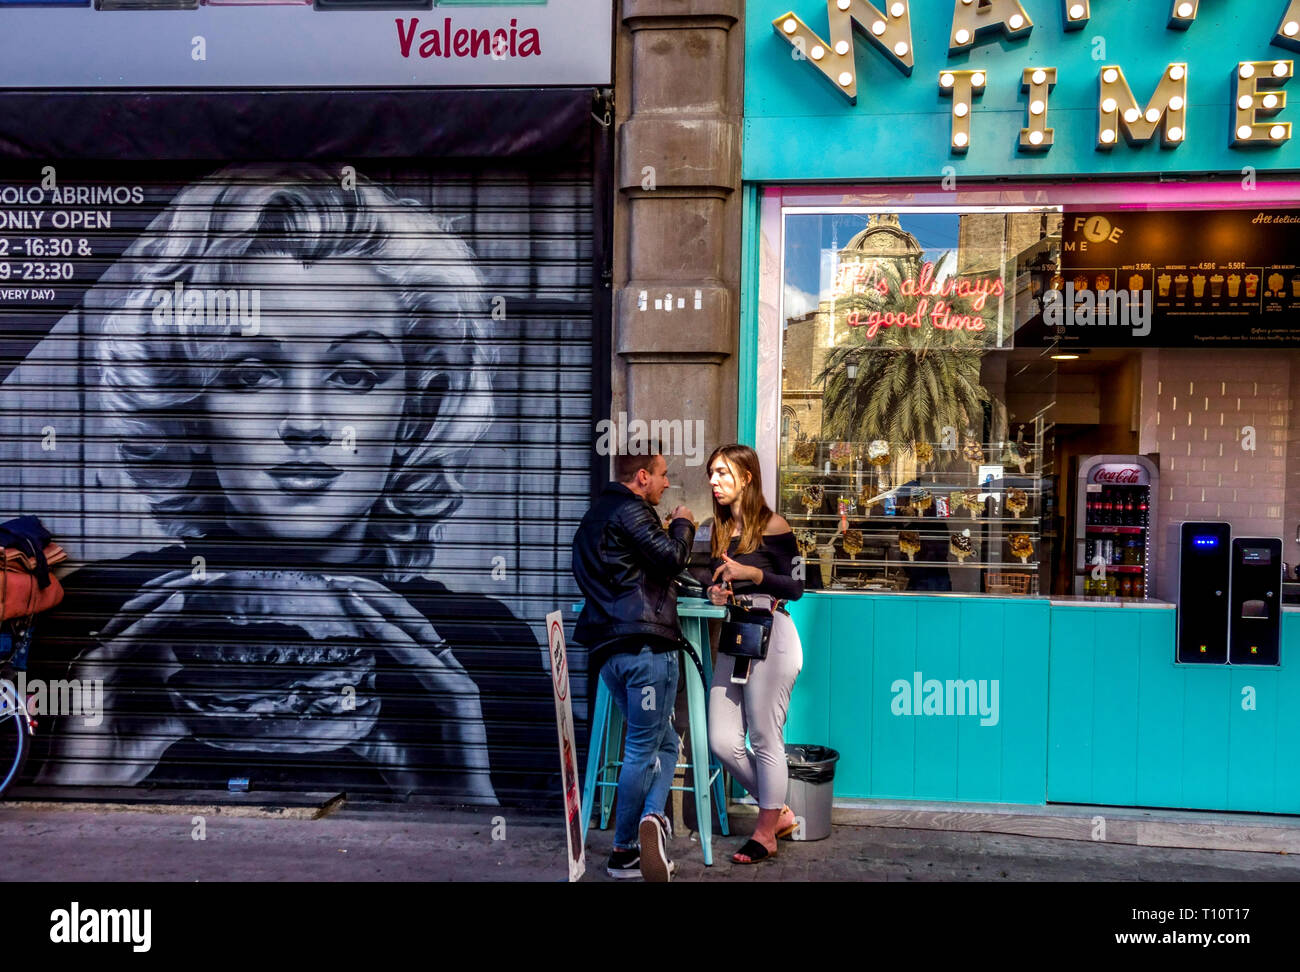 Arte callejero de Valencia Ciudad vieja con Marilyn Monroe comiendo hamburguesa calles valencianas graffiti España escena de la vida joven pareja ciudad Foto de stock